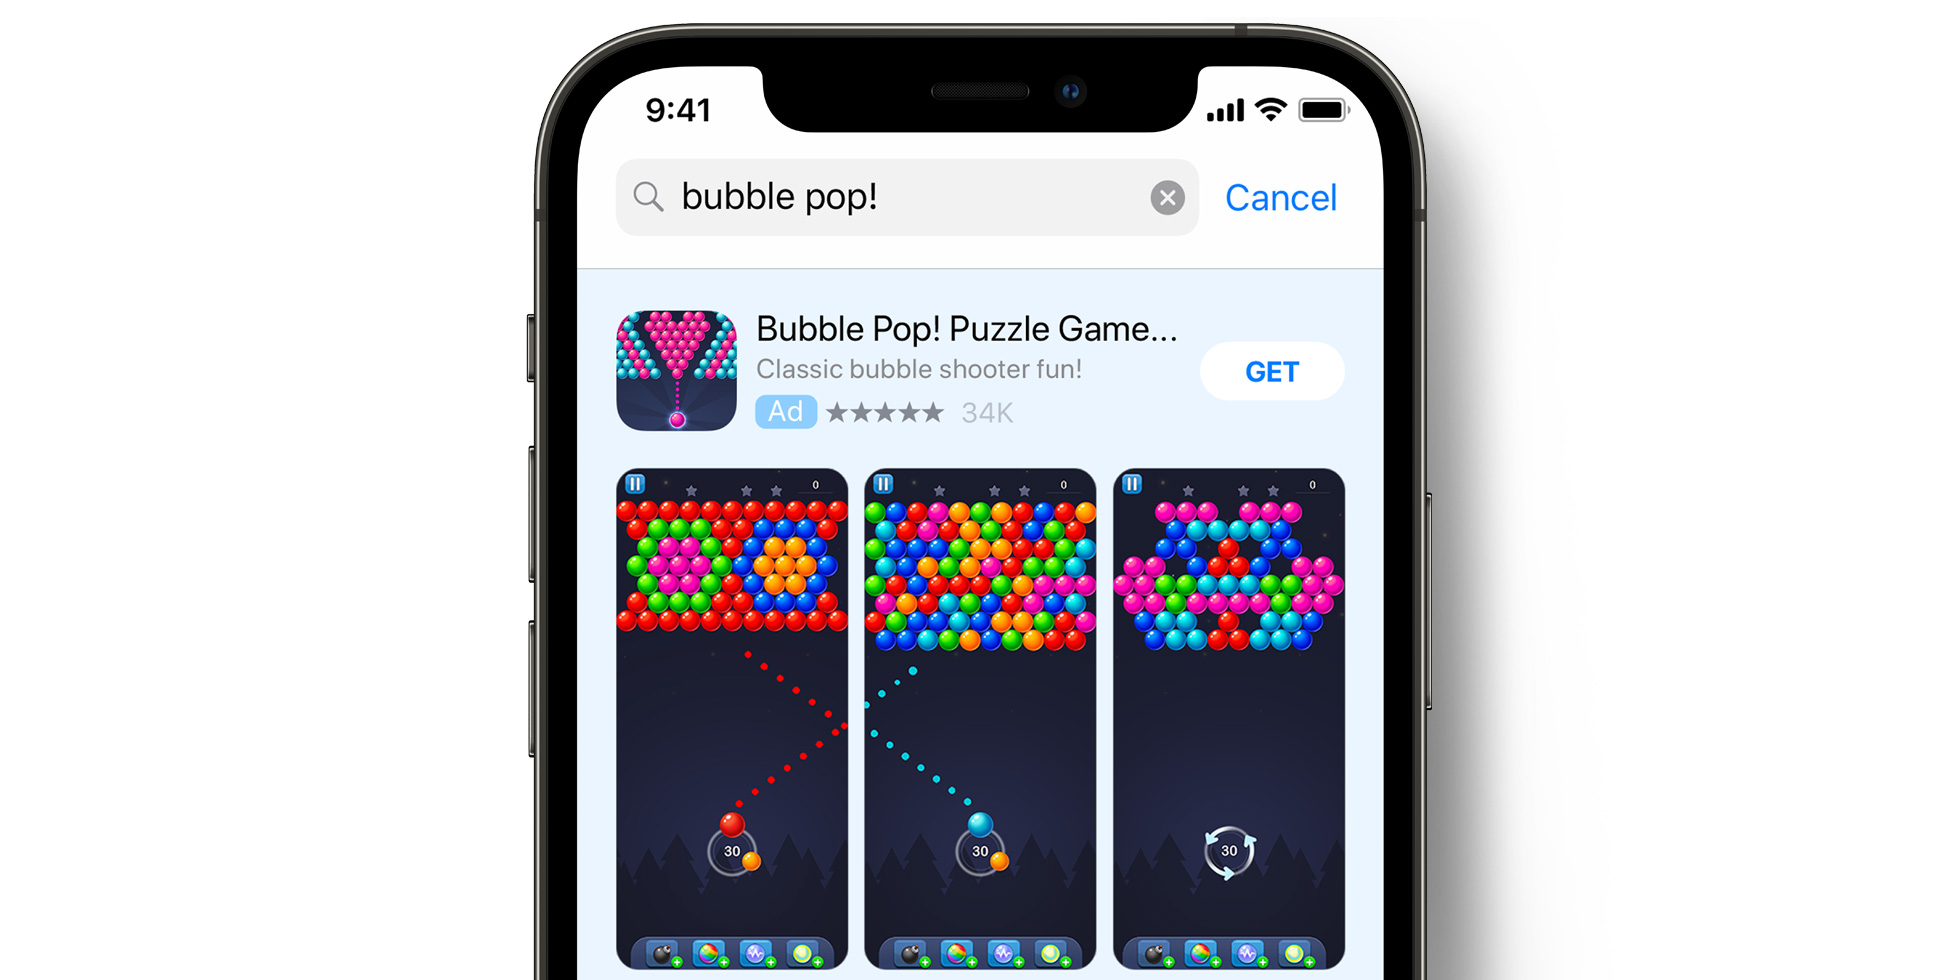 Publicité de Bubble Pop! dans l’App Store